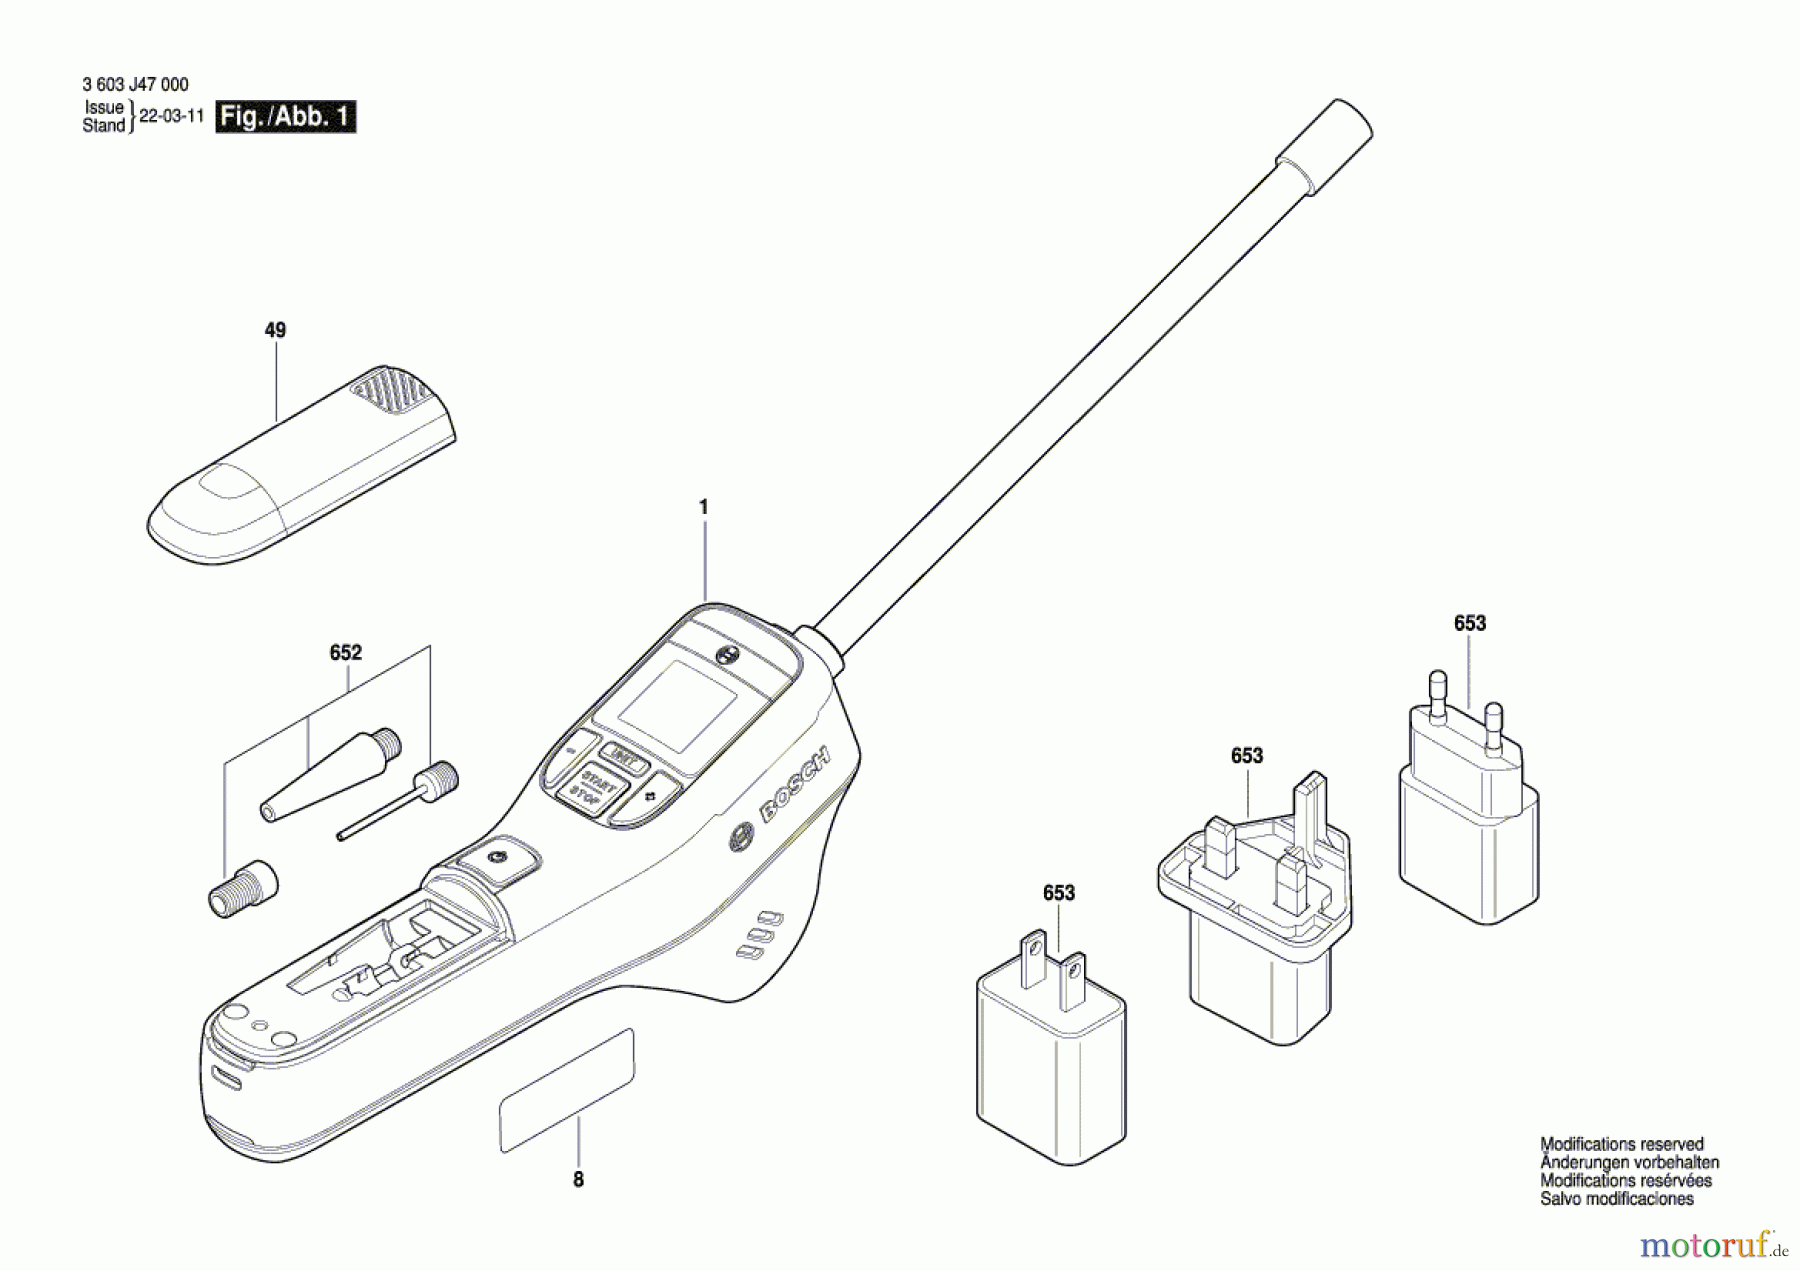  Bosch Werkzeug Luftpumpe EasyPump Seite 1